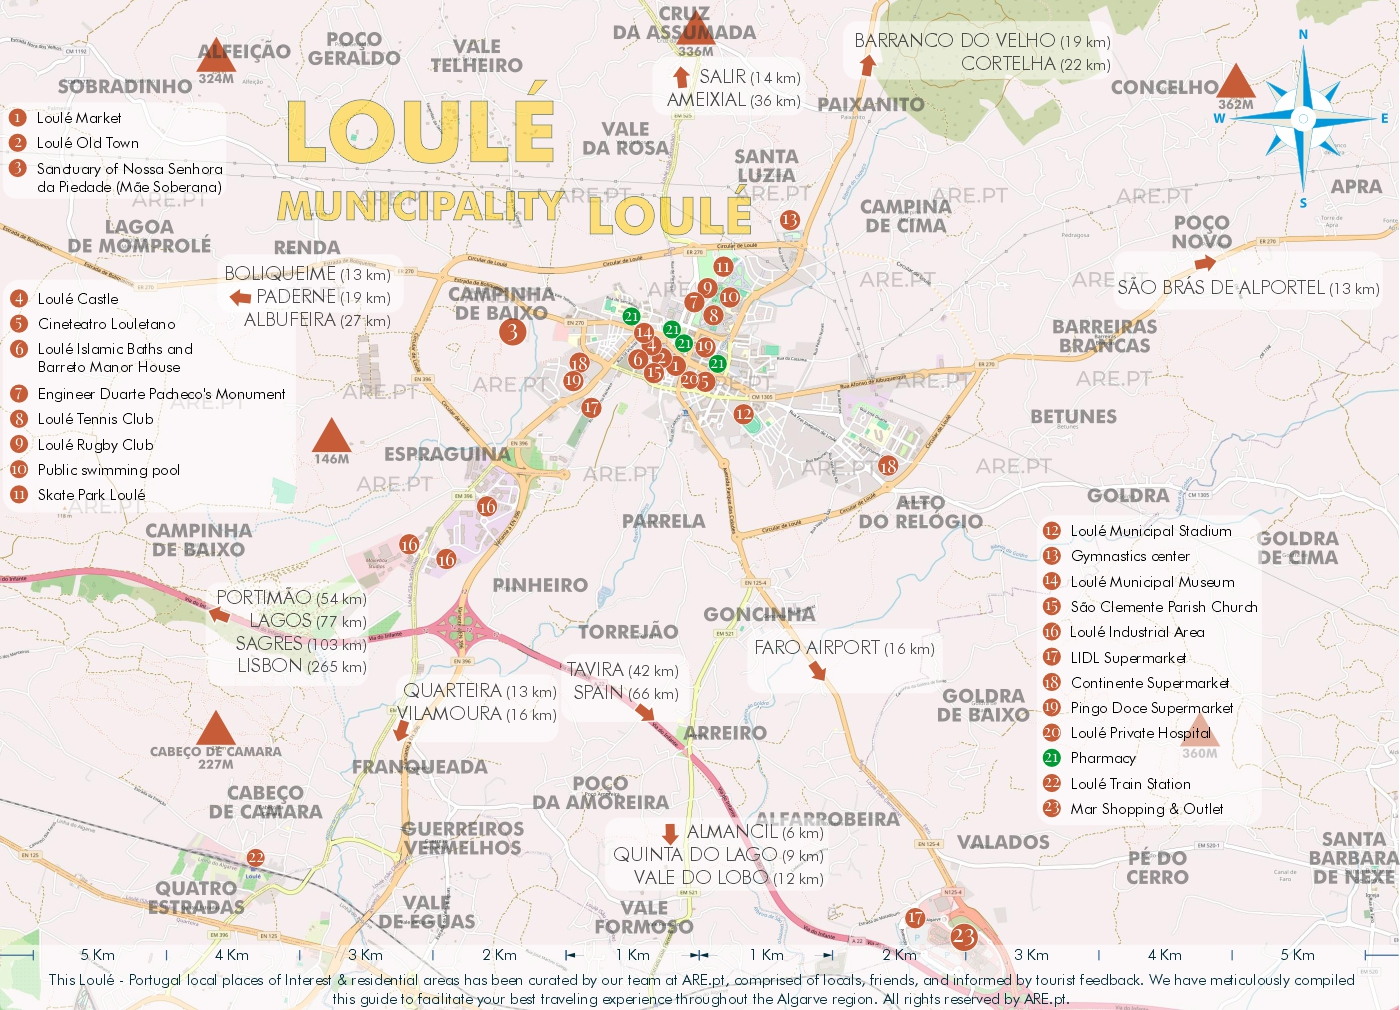 Mapa da cidade e arredores de Loulé, com principais pontos de interesse, localizações úteis e zonas residenciais. Distâncias às principais localidades do sul de Portugal